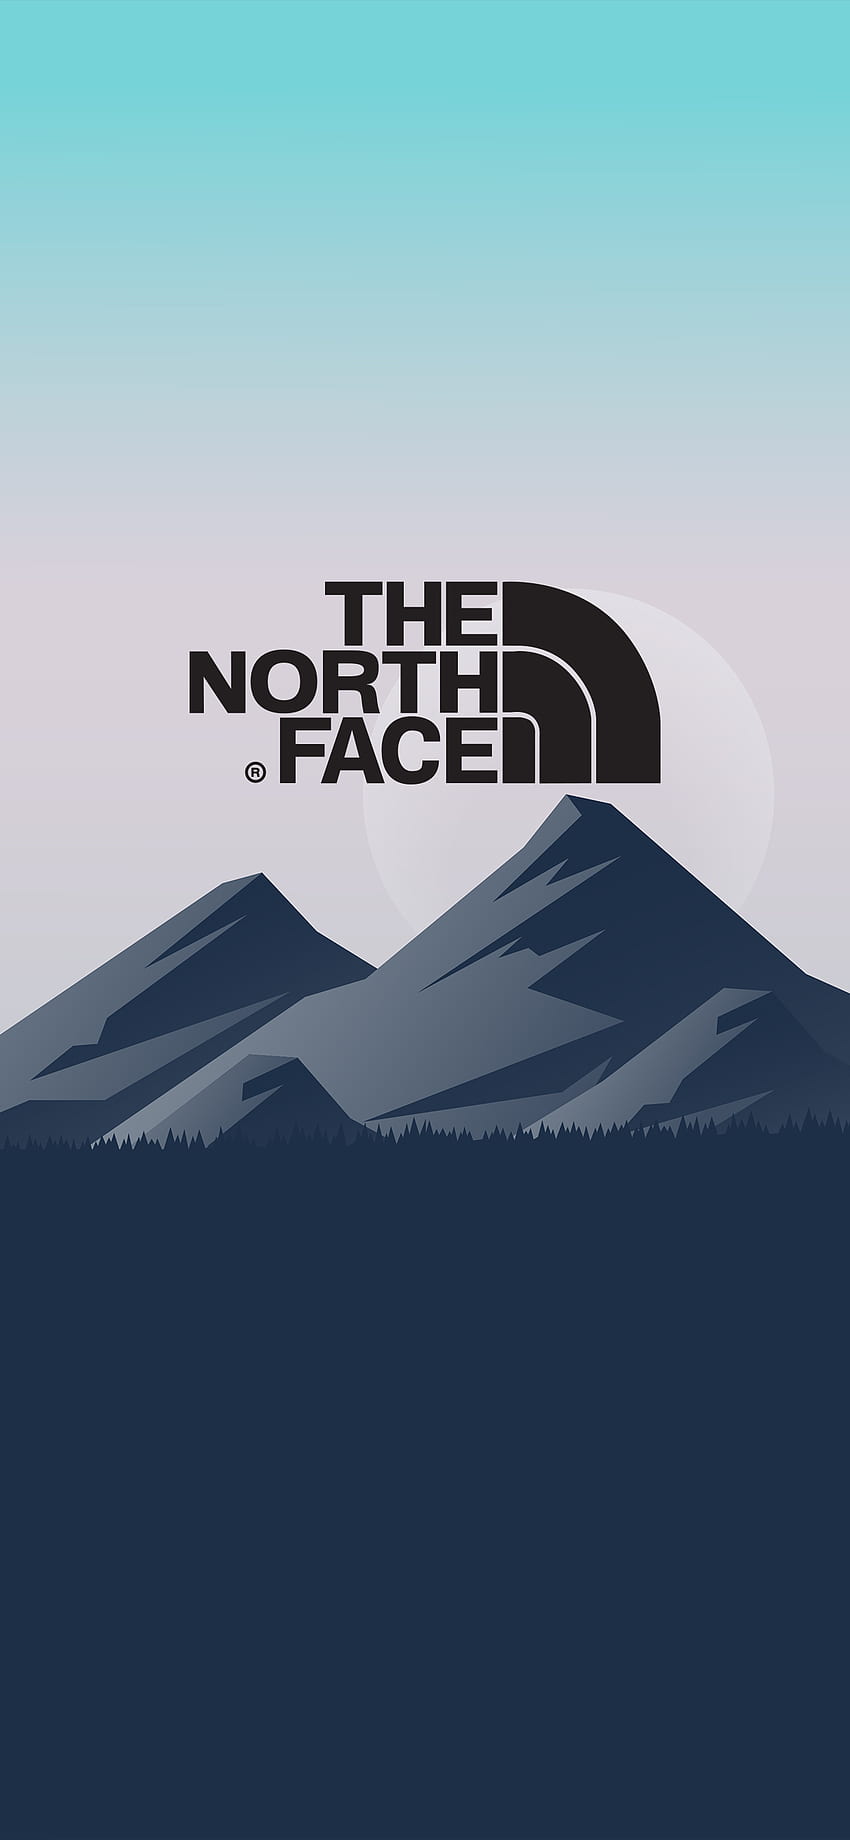 THE NORTH FACE HINTERGRUND, Ästhetik der Nordwand HD-Handy-Hintergrundbild